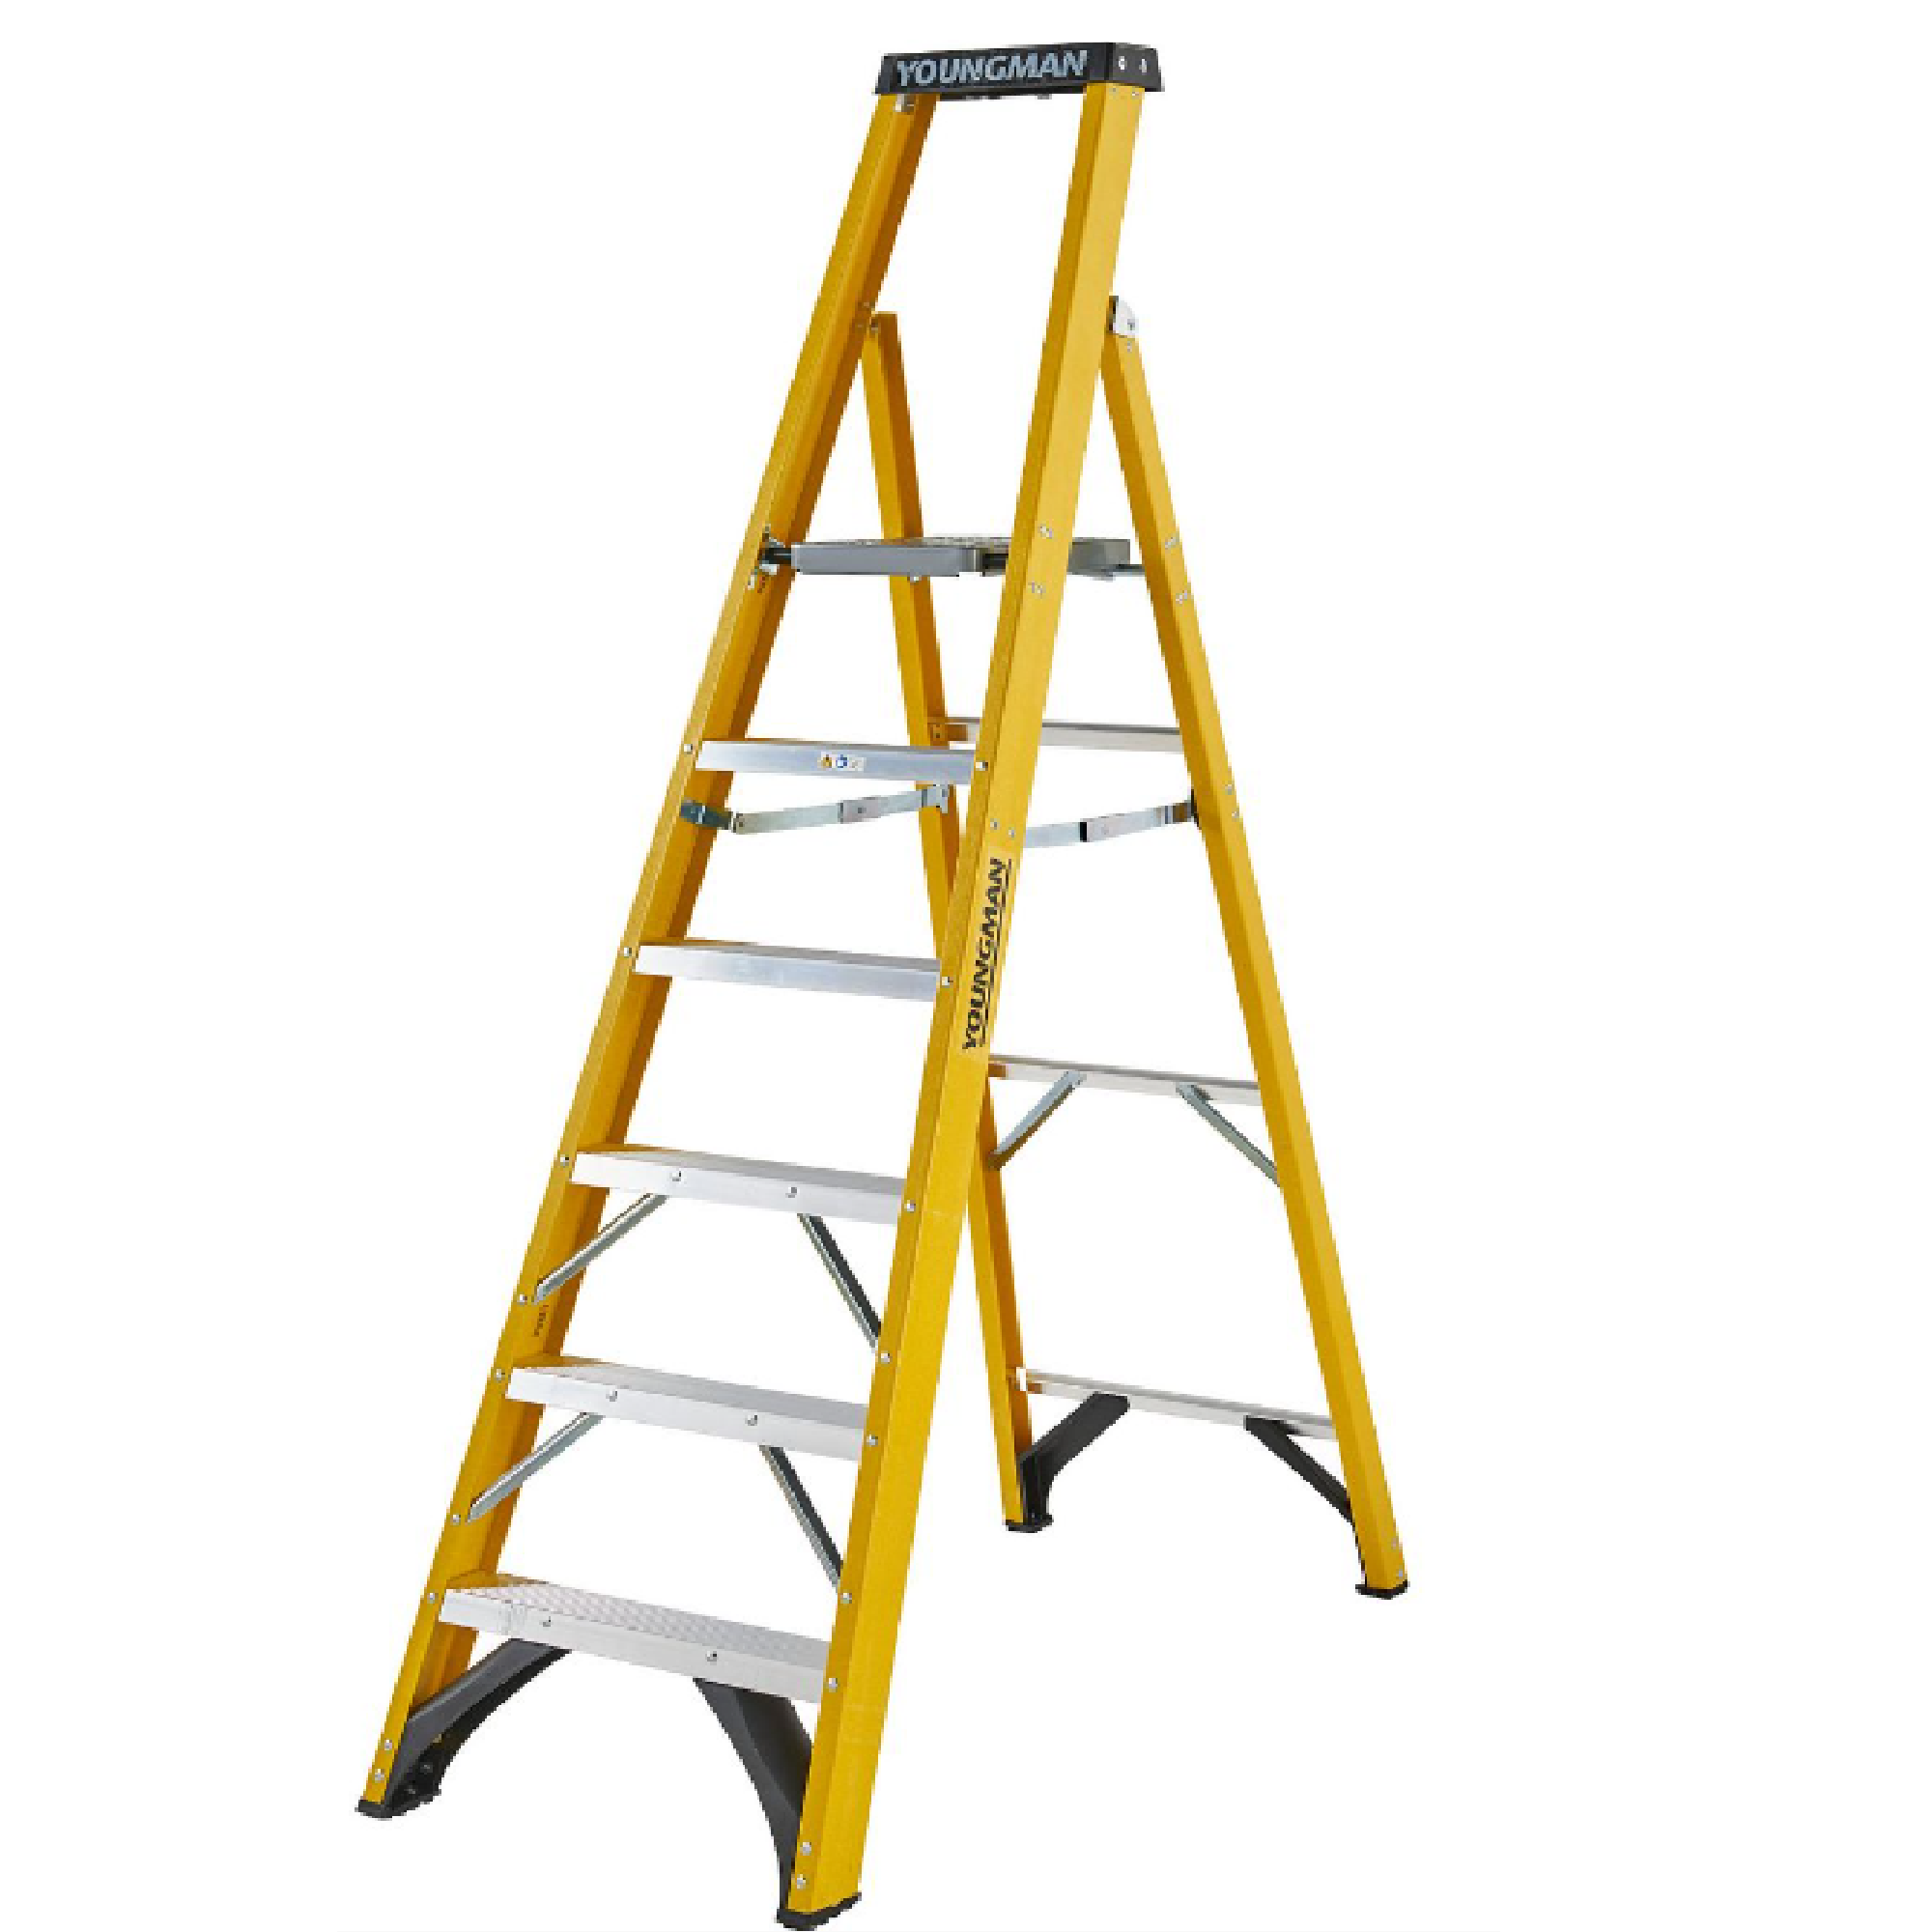 YOUNGMAN S400 Fiberglass PLATFORM Ladder